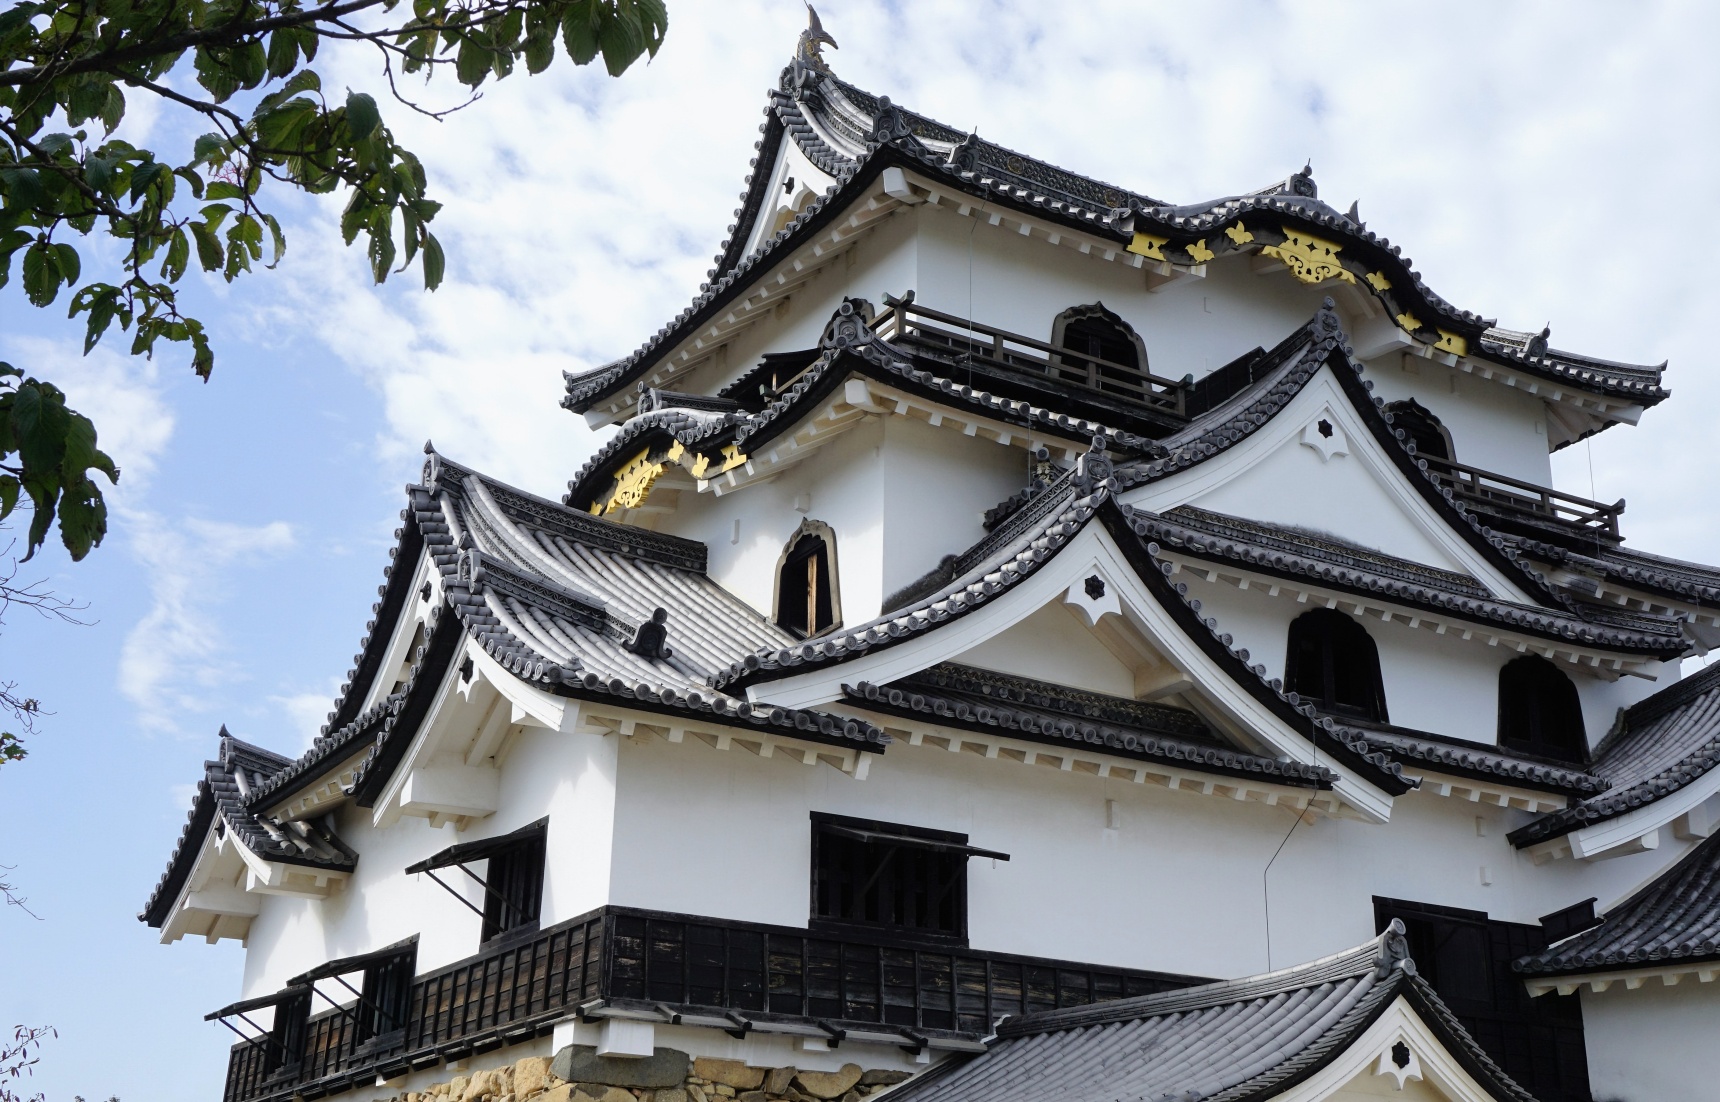 A Samurai History Tour: Japan’s Most Famous Battlefield and a Remarkable Castle